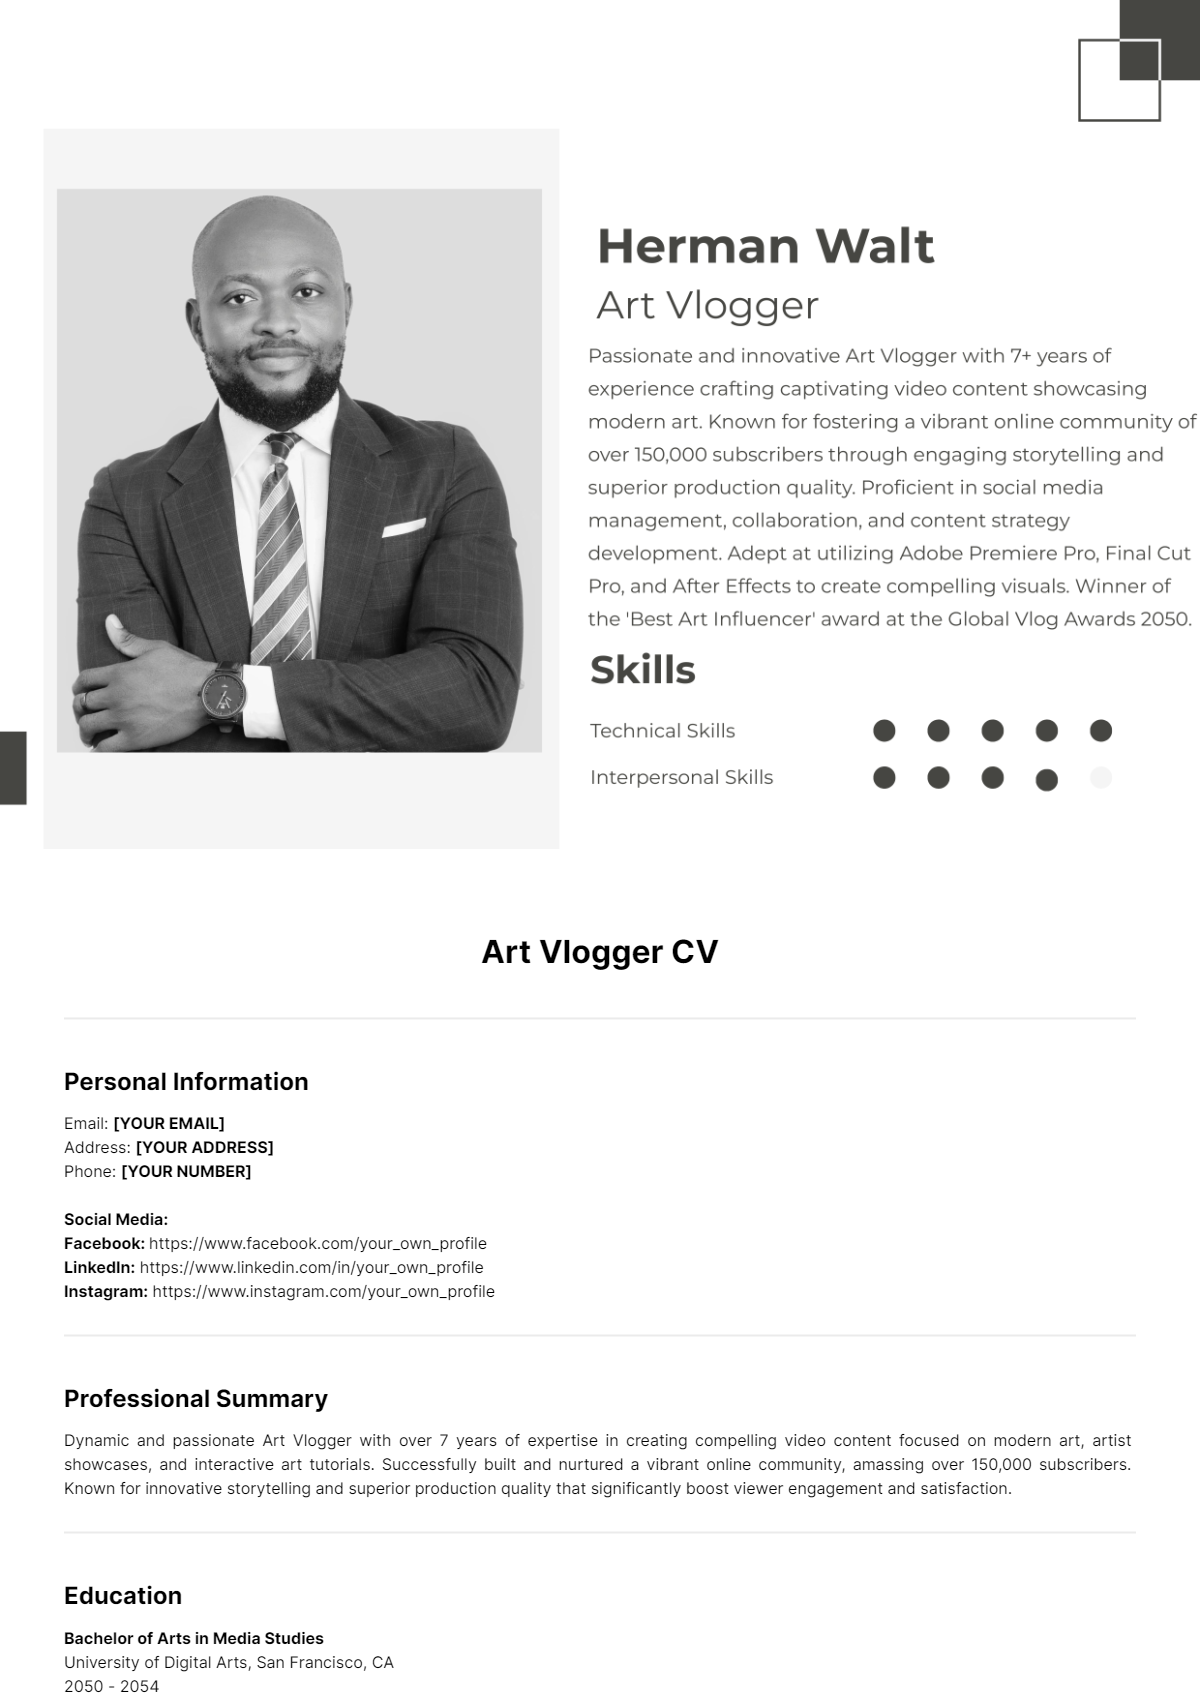 Art Vlogger CV Presentation